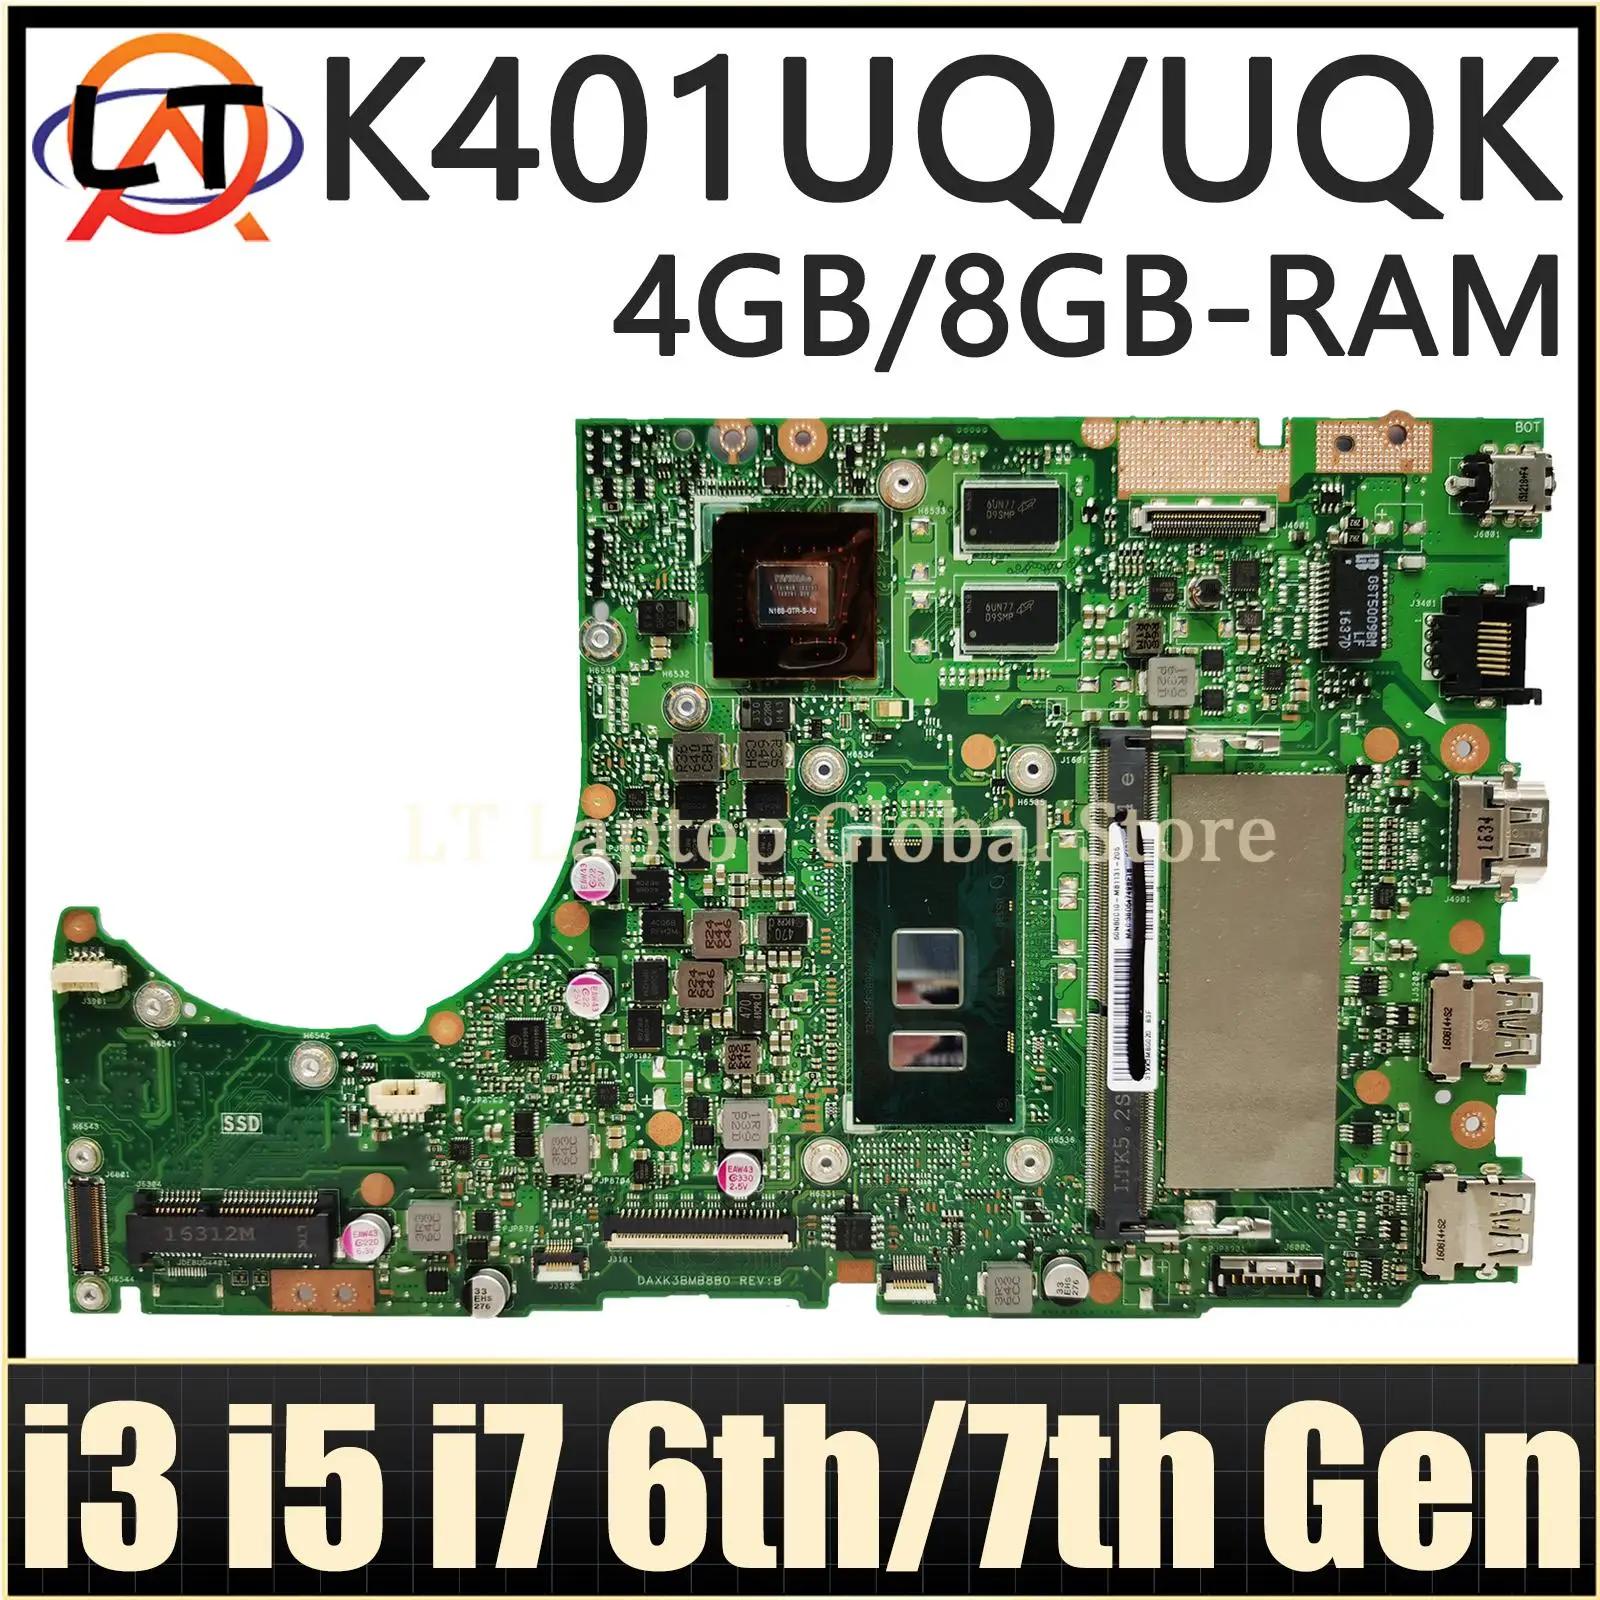 ASUS Ʈ κ, K401UQ, K401UQK, K401UB, A401U, V401U, K401U, A400U, i3, i5, i7, 6 , 7  CPU, 4GB, 8GB RAM, GT940M